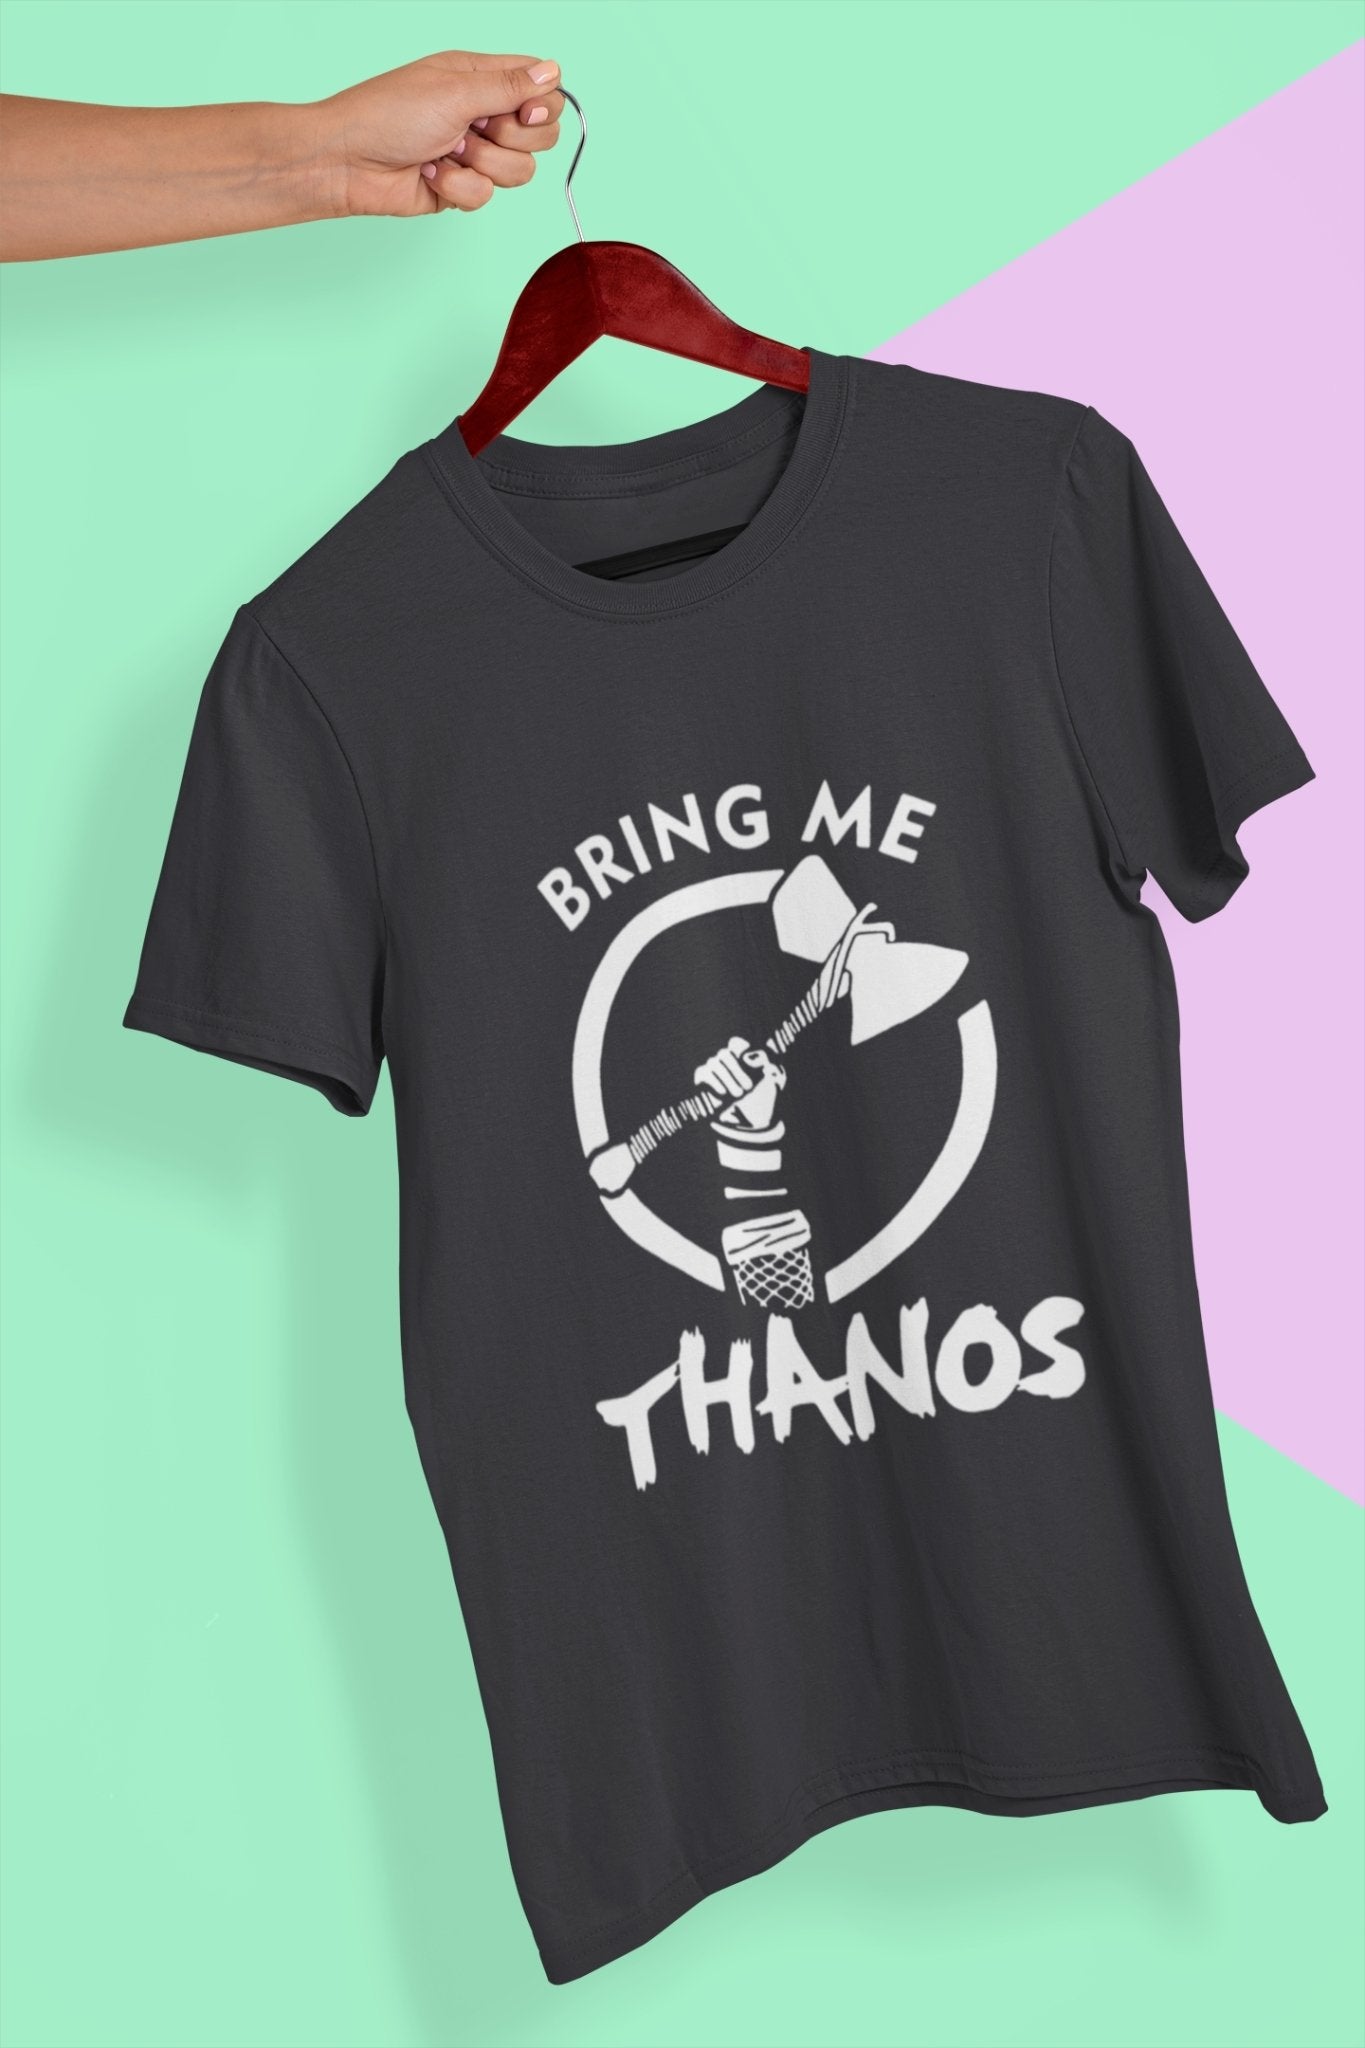 Bring Me Thanos Mens Half Sleeves T-shirt- FunkyTeesClub - Funky Tees Club